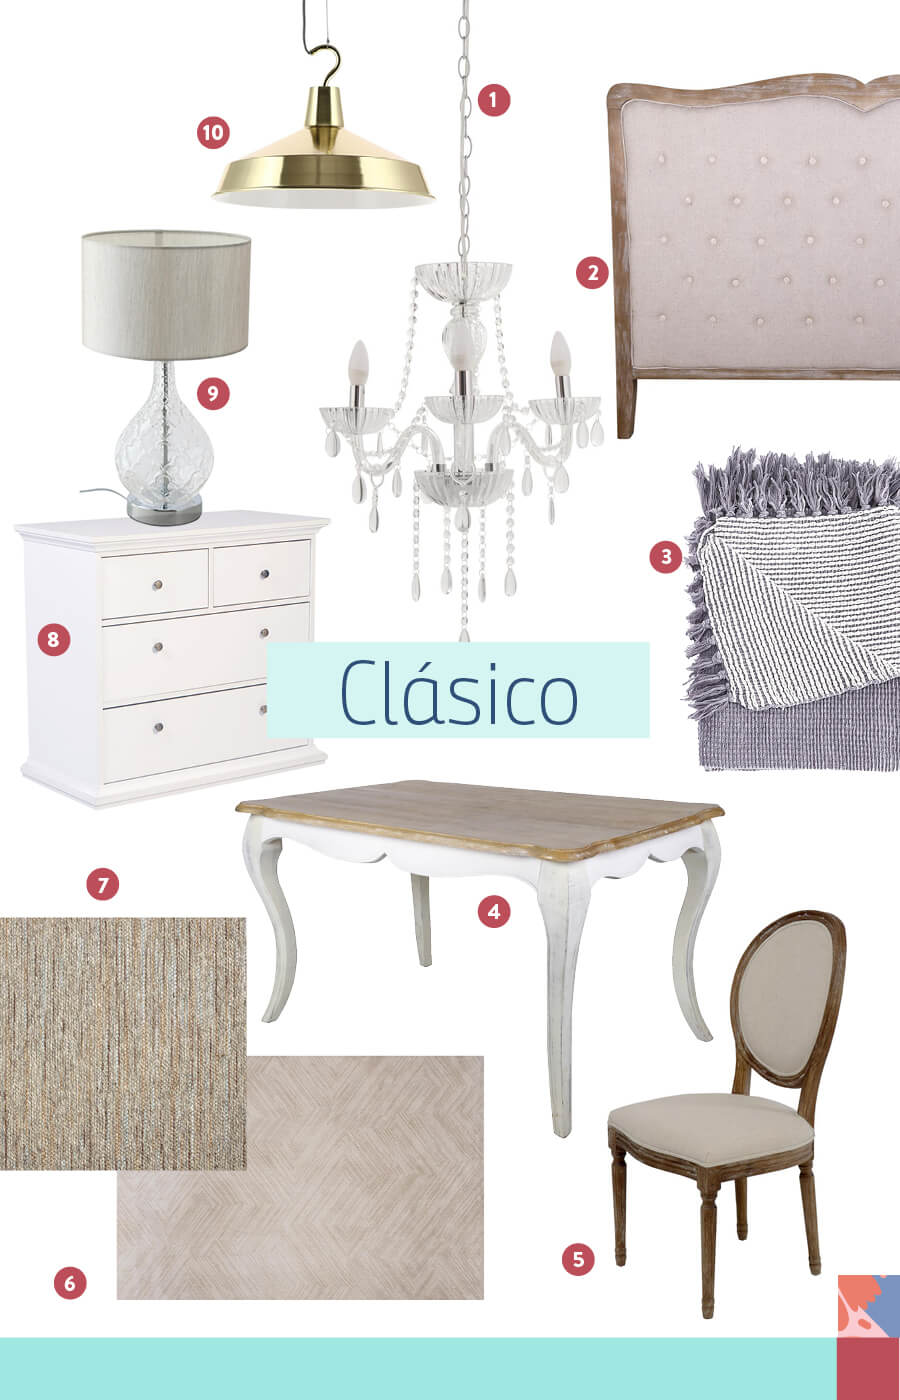 Selección de artículos para crear una decoración clásica, como lámparas, muebles y alfombras